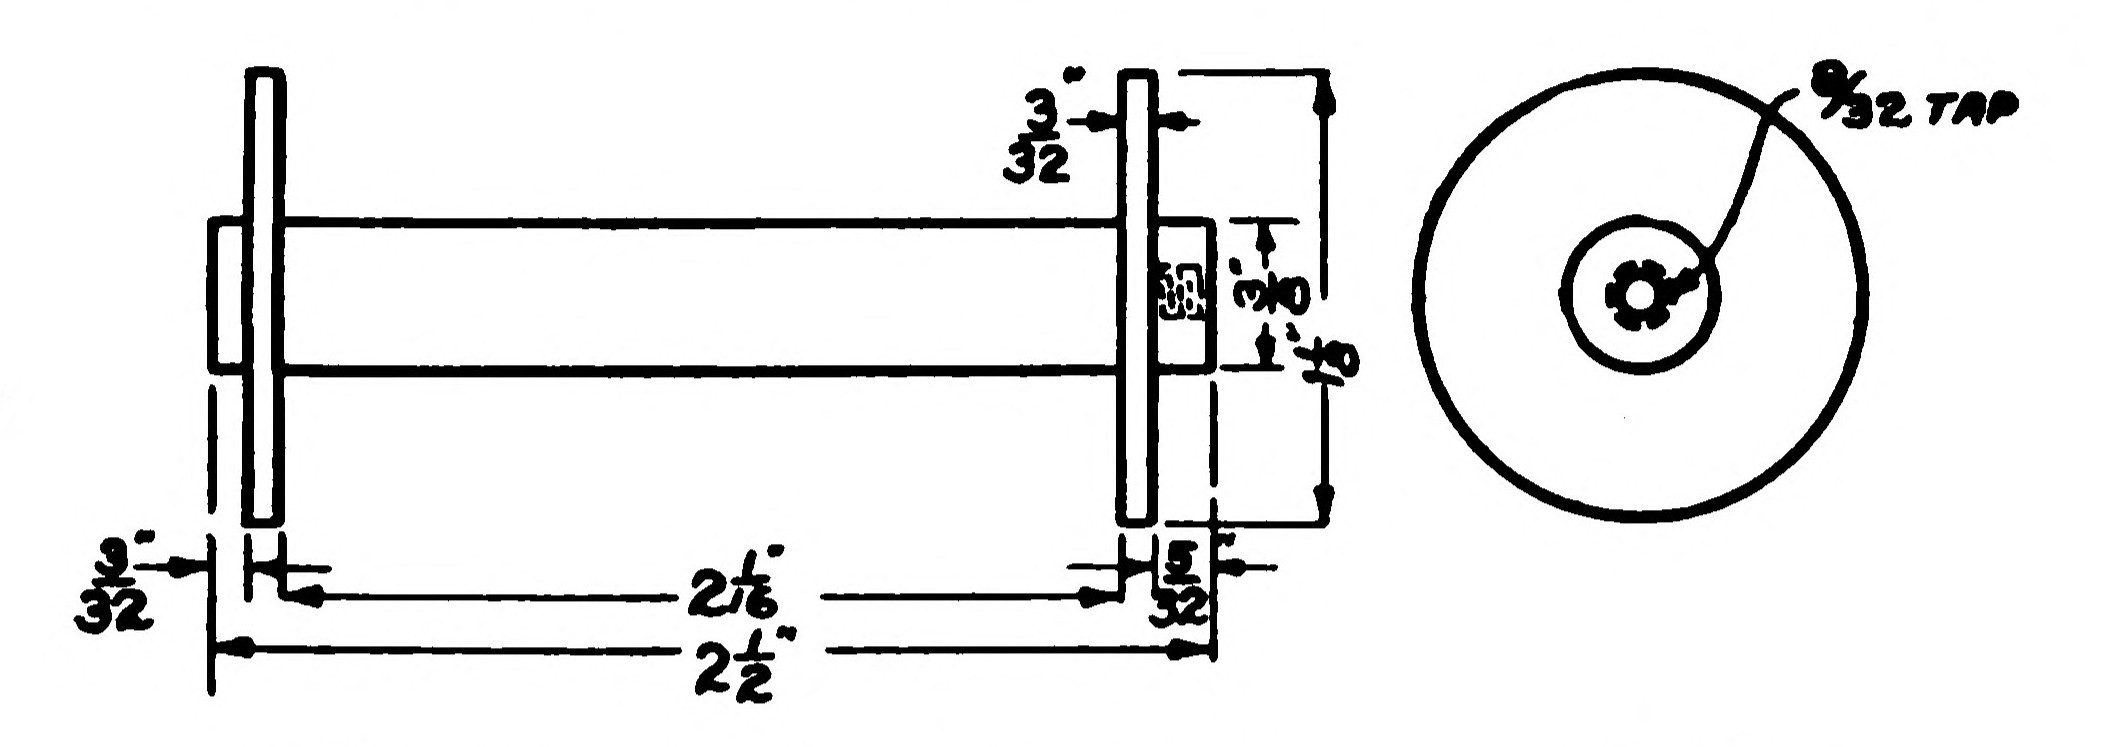 FIG. 145.—Details of the Electromagnet Bobbin.